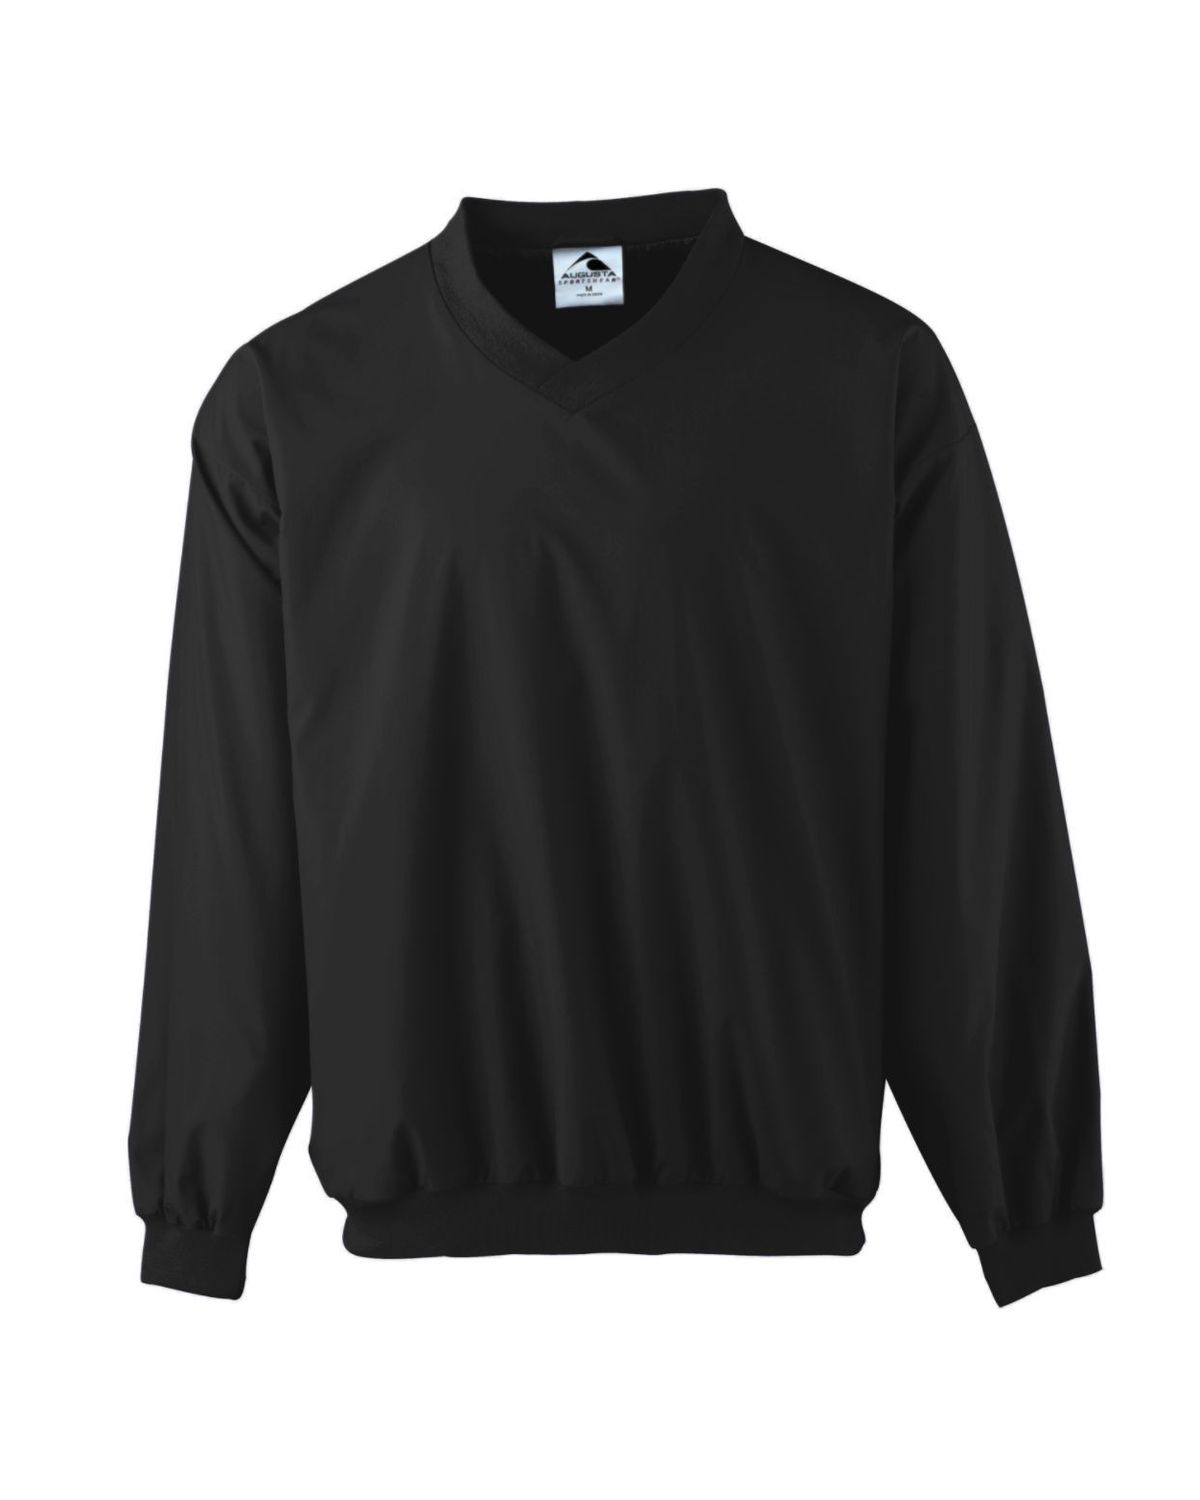 'Augusta Sportswear 3415 Micro Poly Lined Sportswear Windshirt'